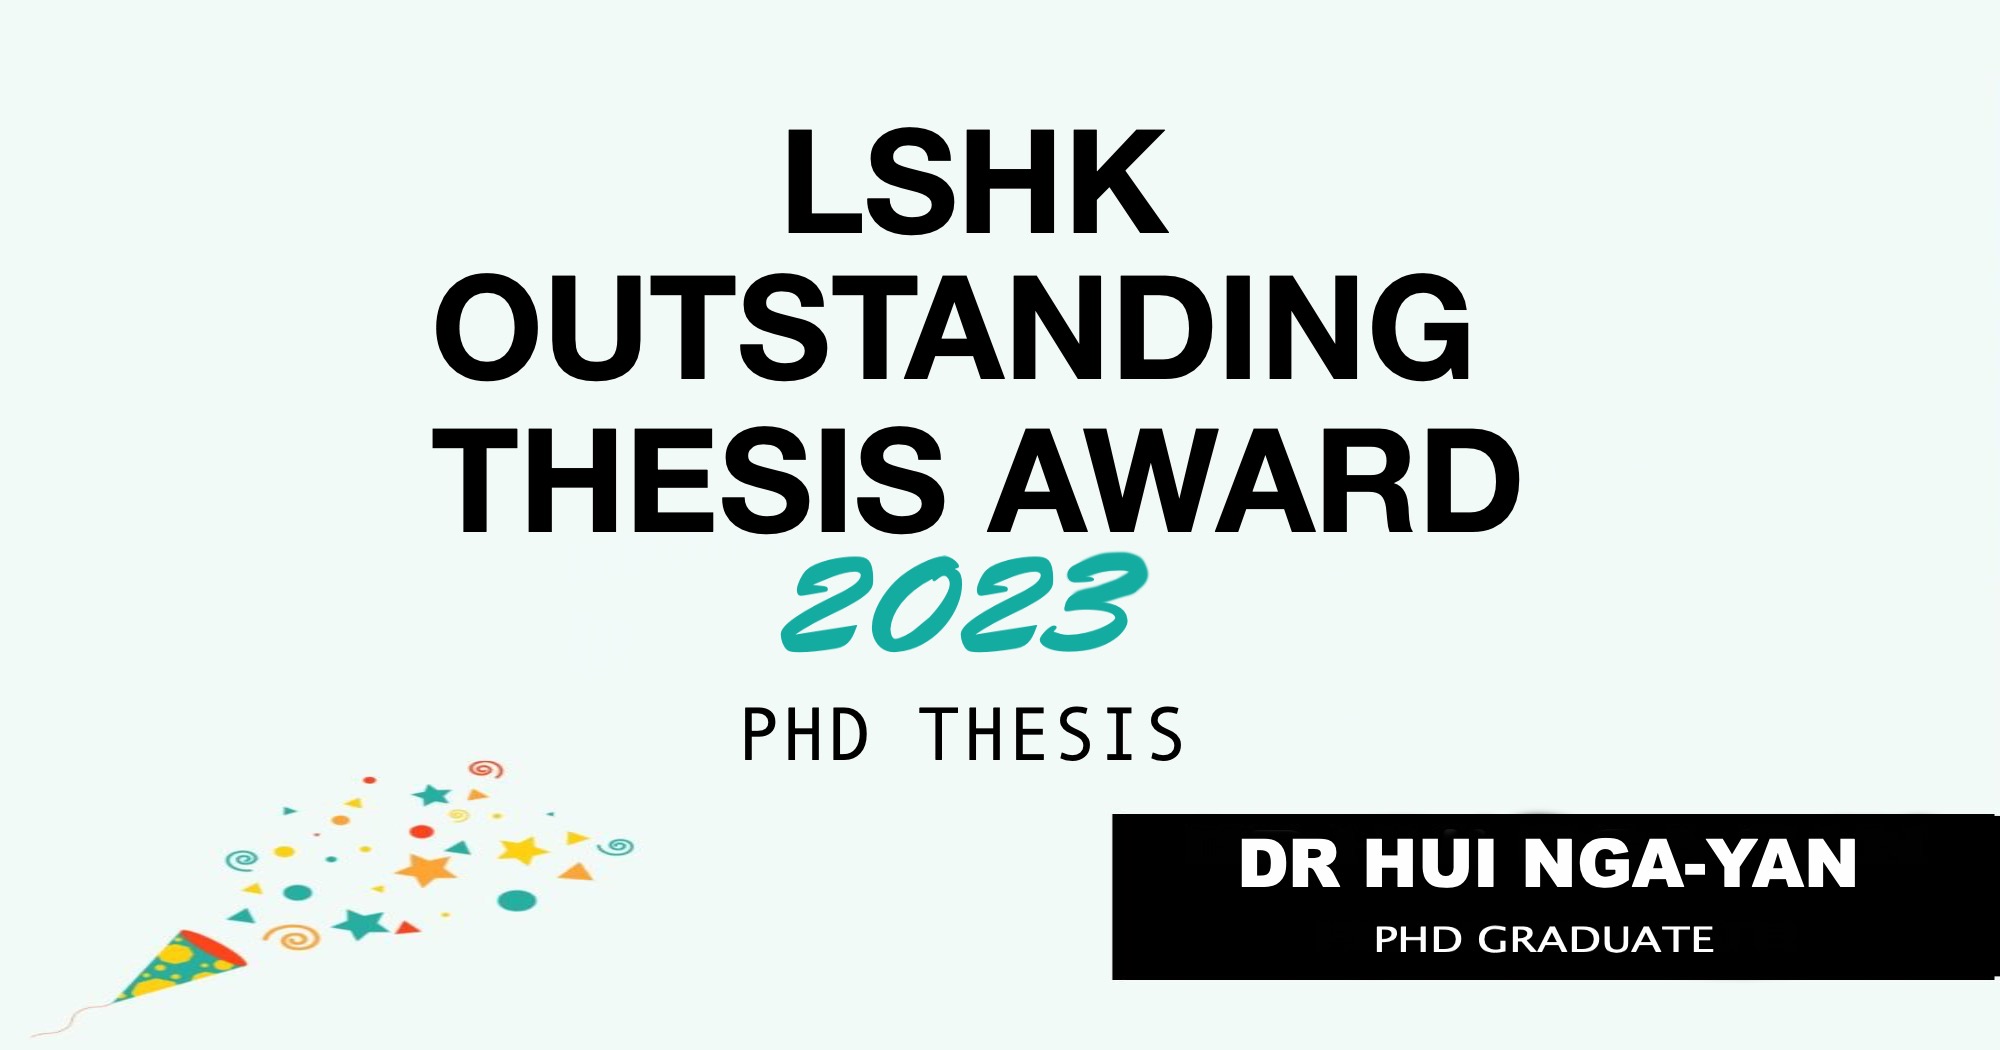 phd thesis award 2023